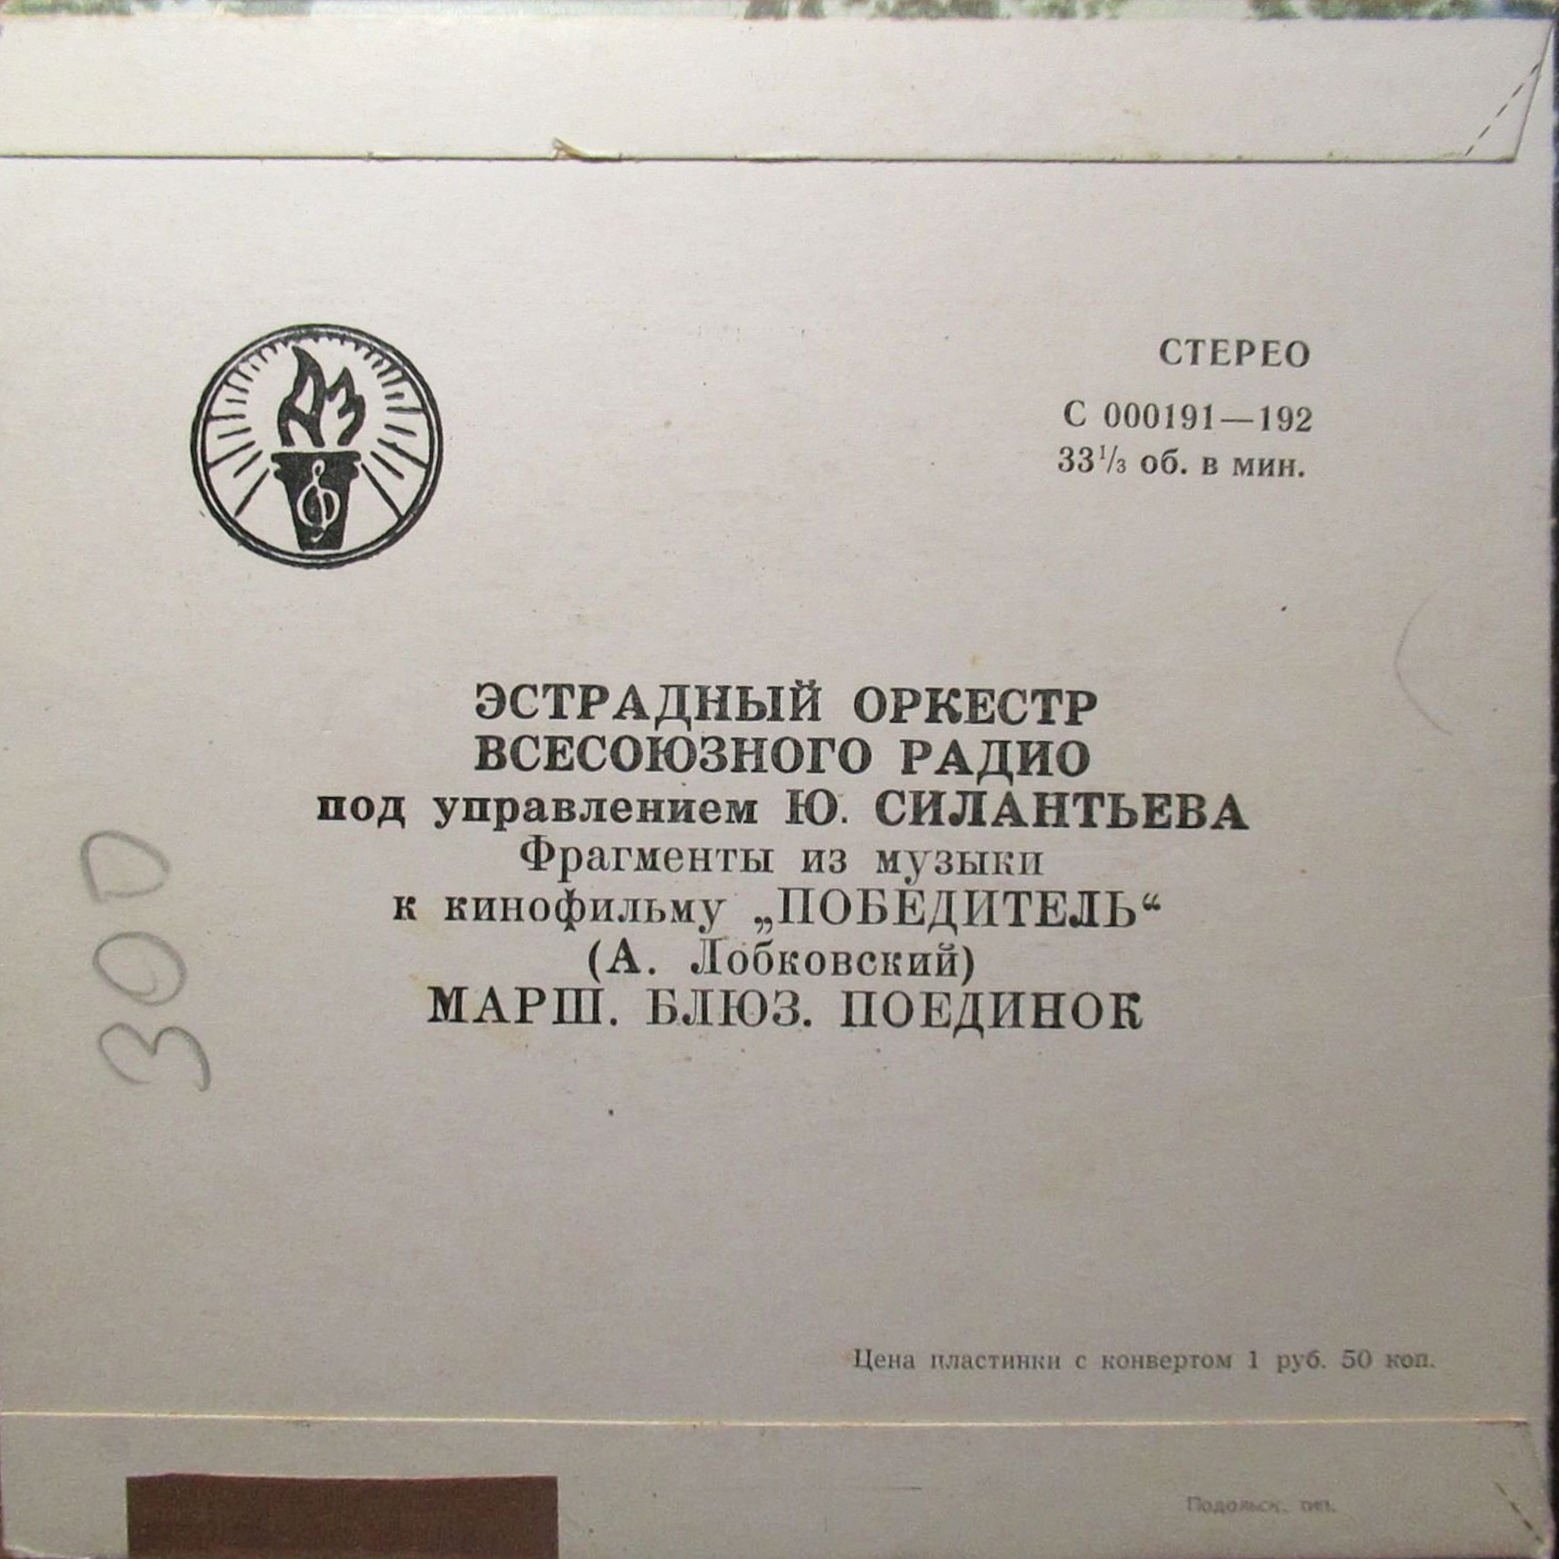 А. ЛОБКОВСКИЙ (1912) - Из музыки к к/ф «Победитель»